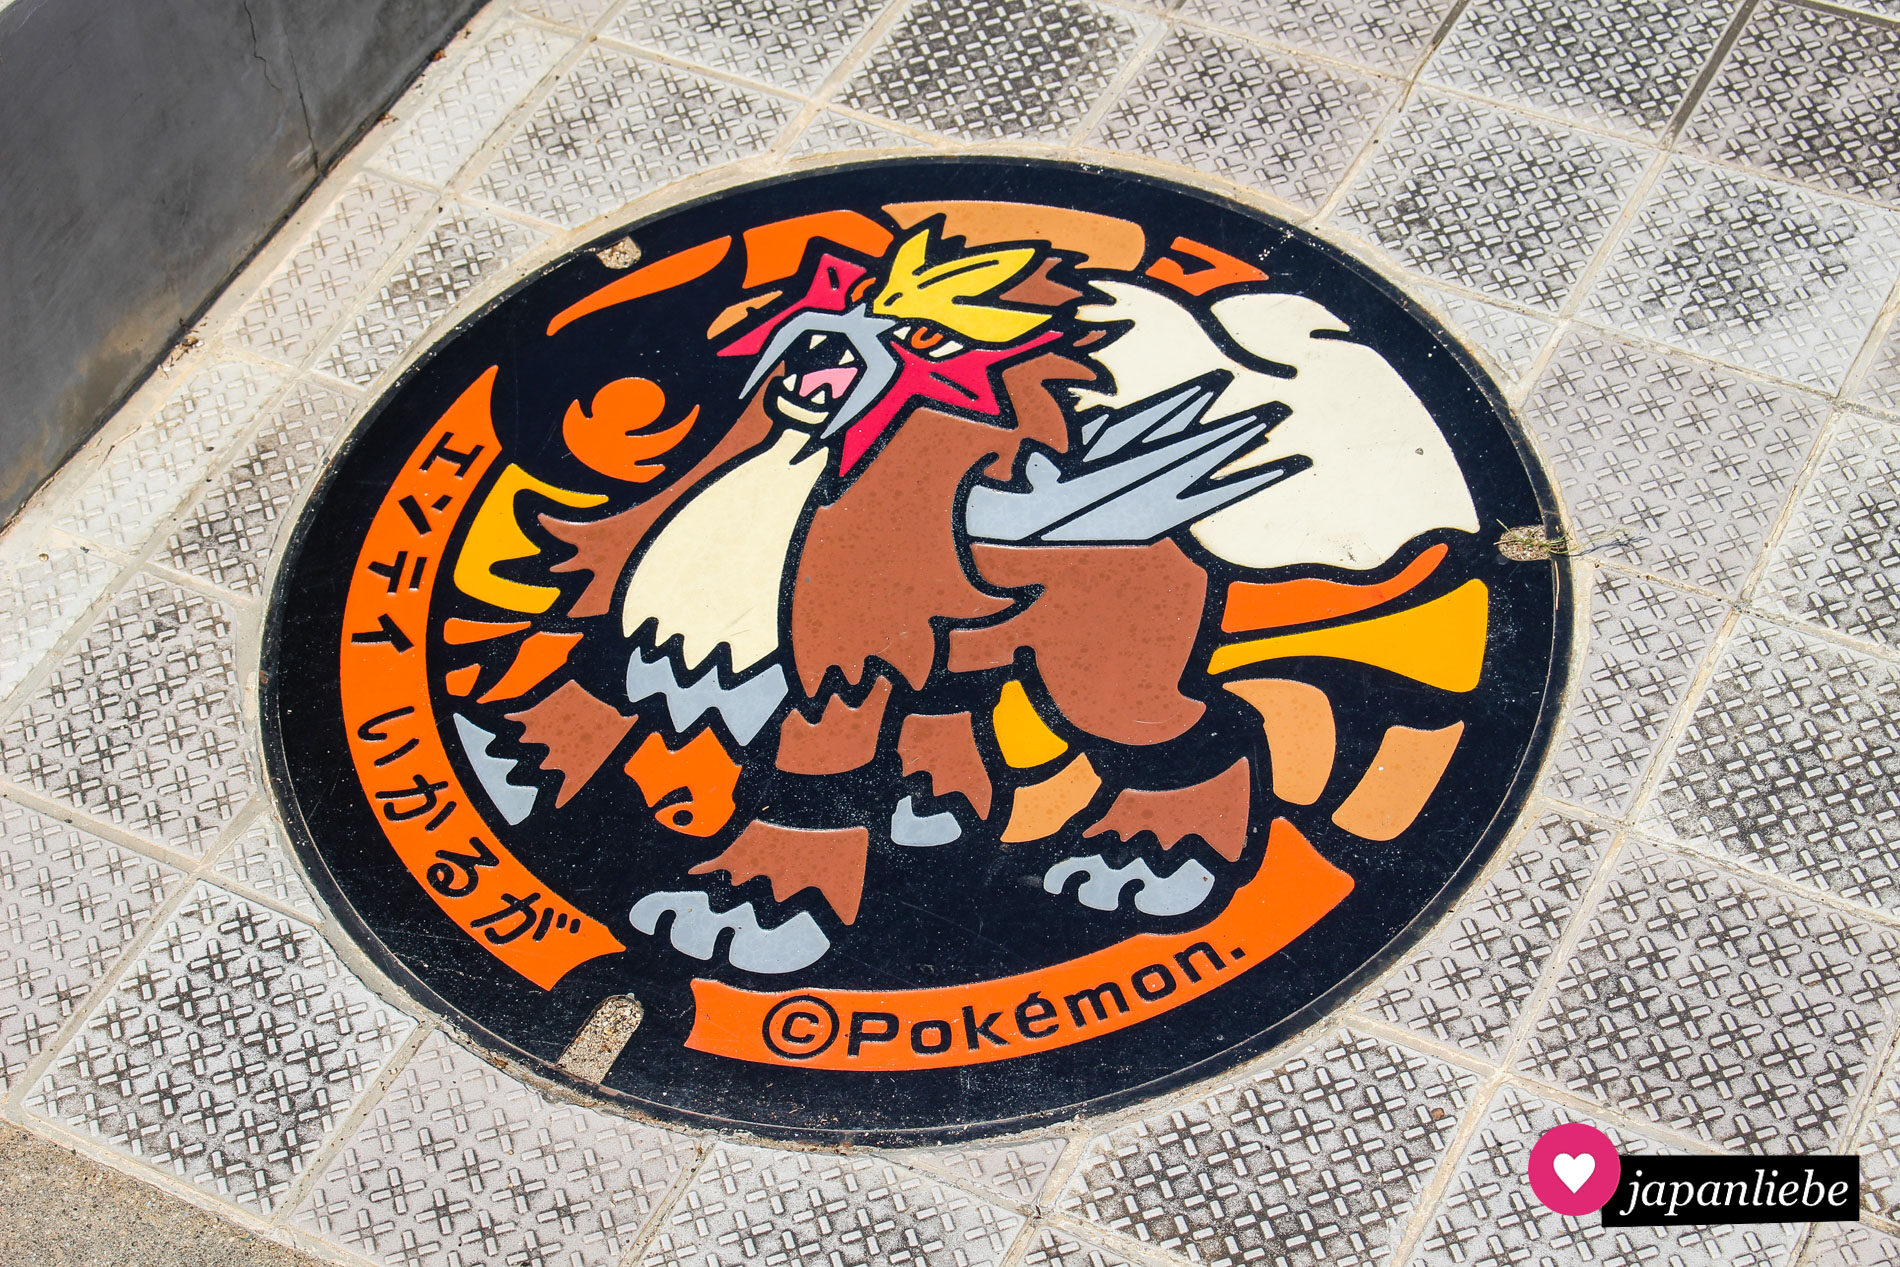 Ganz in der Nähe des Hōryū-ji-Tempels in der Stadt Ikaruga, Nara lässt dich das legendäre Pokémon Entei auf einem Kanaldeckel finden.